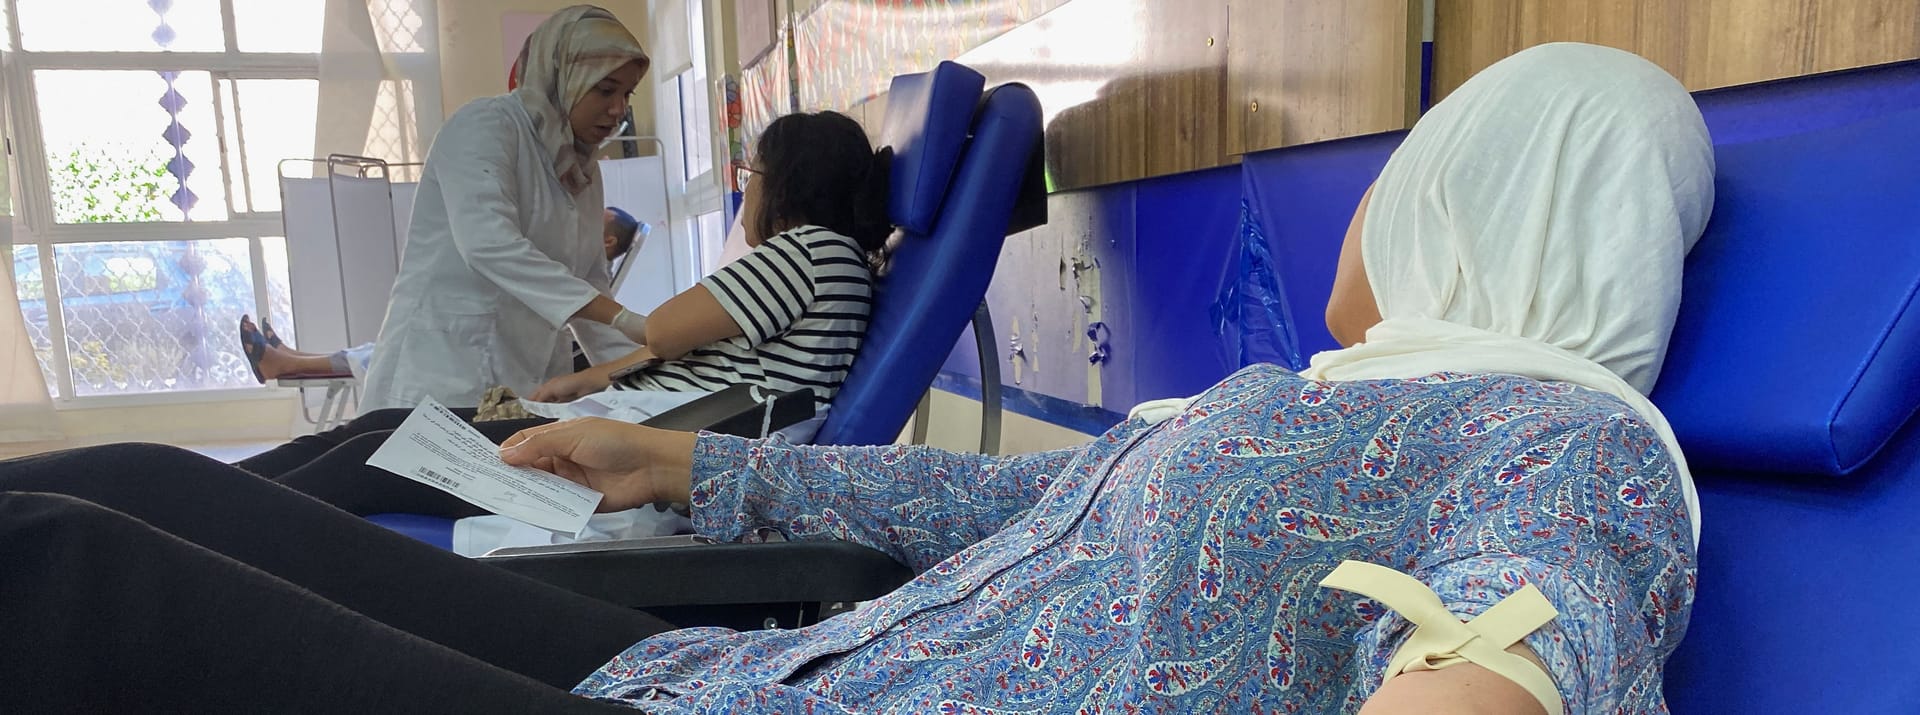 Menschen spenden Blut für die Verletzten: Hunderte Menschen wurden in Krankenhäuser eingeliefert.